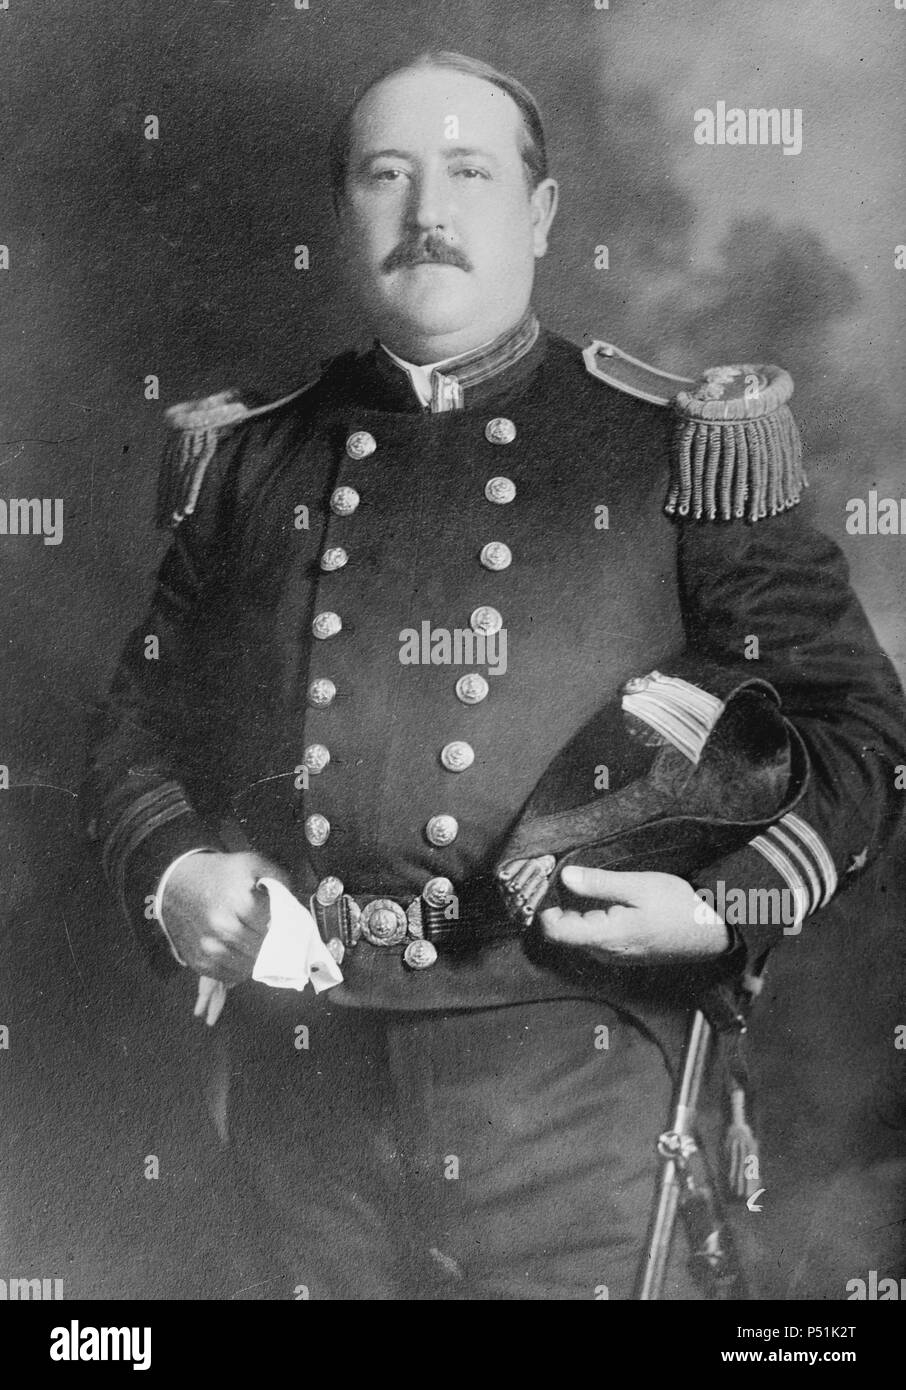 Le Contre-amiral John Hubbard (19 mai 1849 - 30 mai 1932) était un officier de la marine des États-Unis. Il a combattu dans la guerre hispano-américaine, a joué un rôle éminent dans l'indépendance du Panama de la Colombie en 1903 Banque D'Images